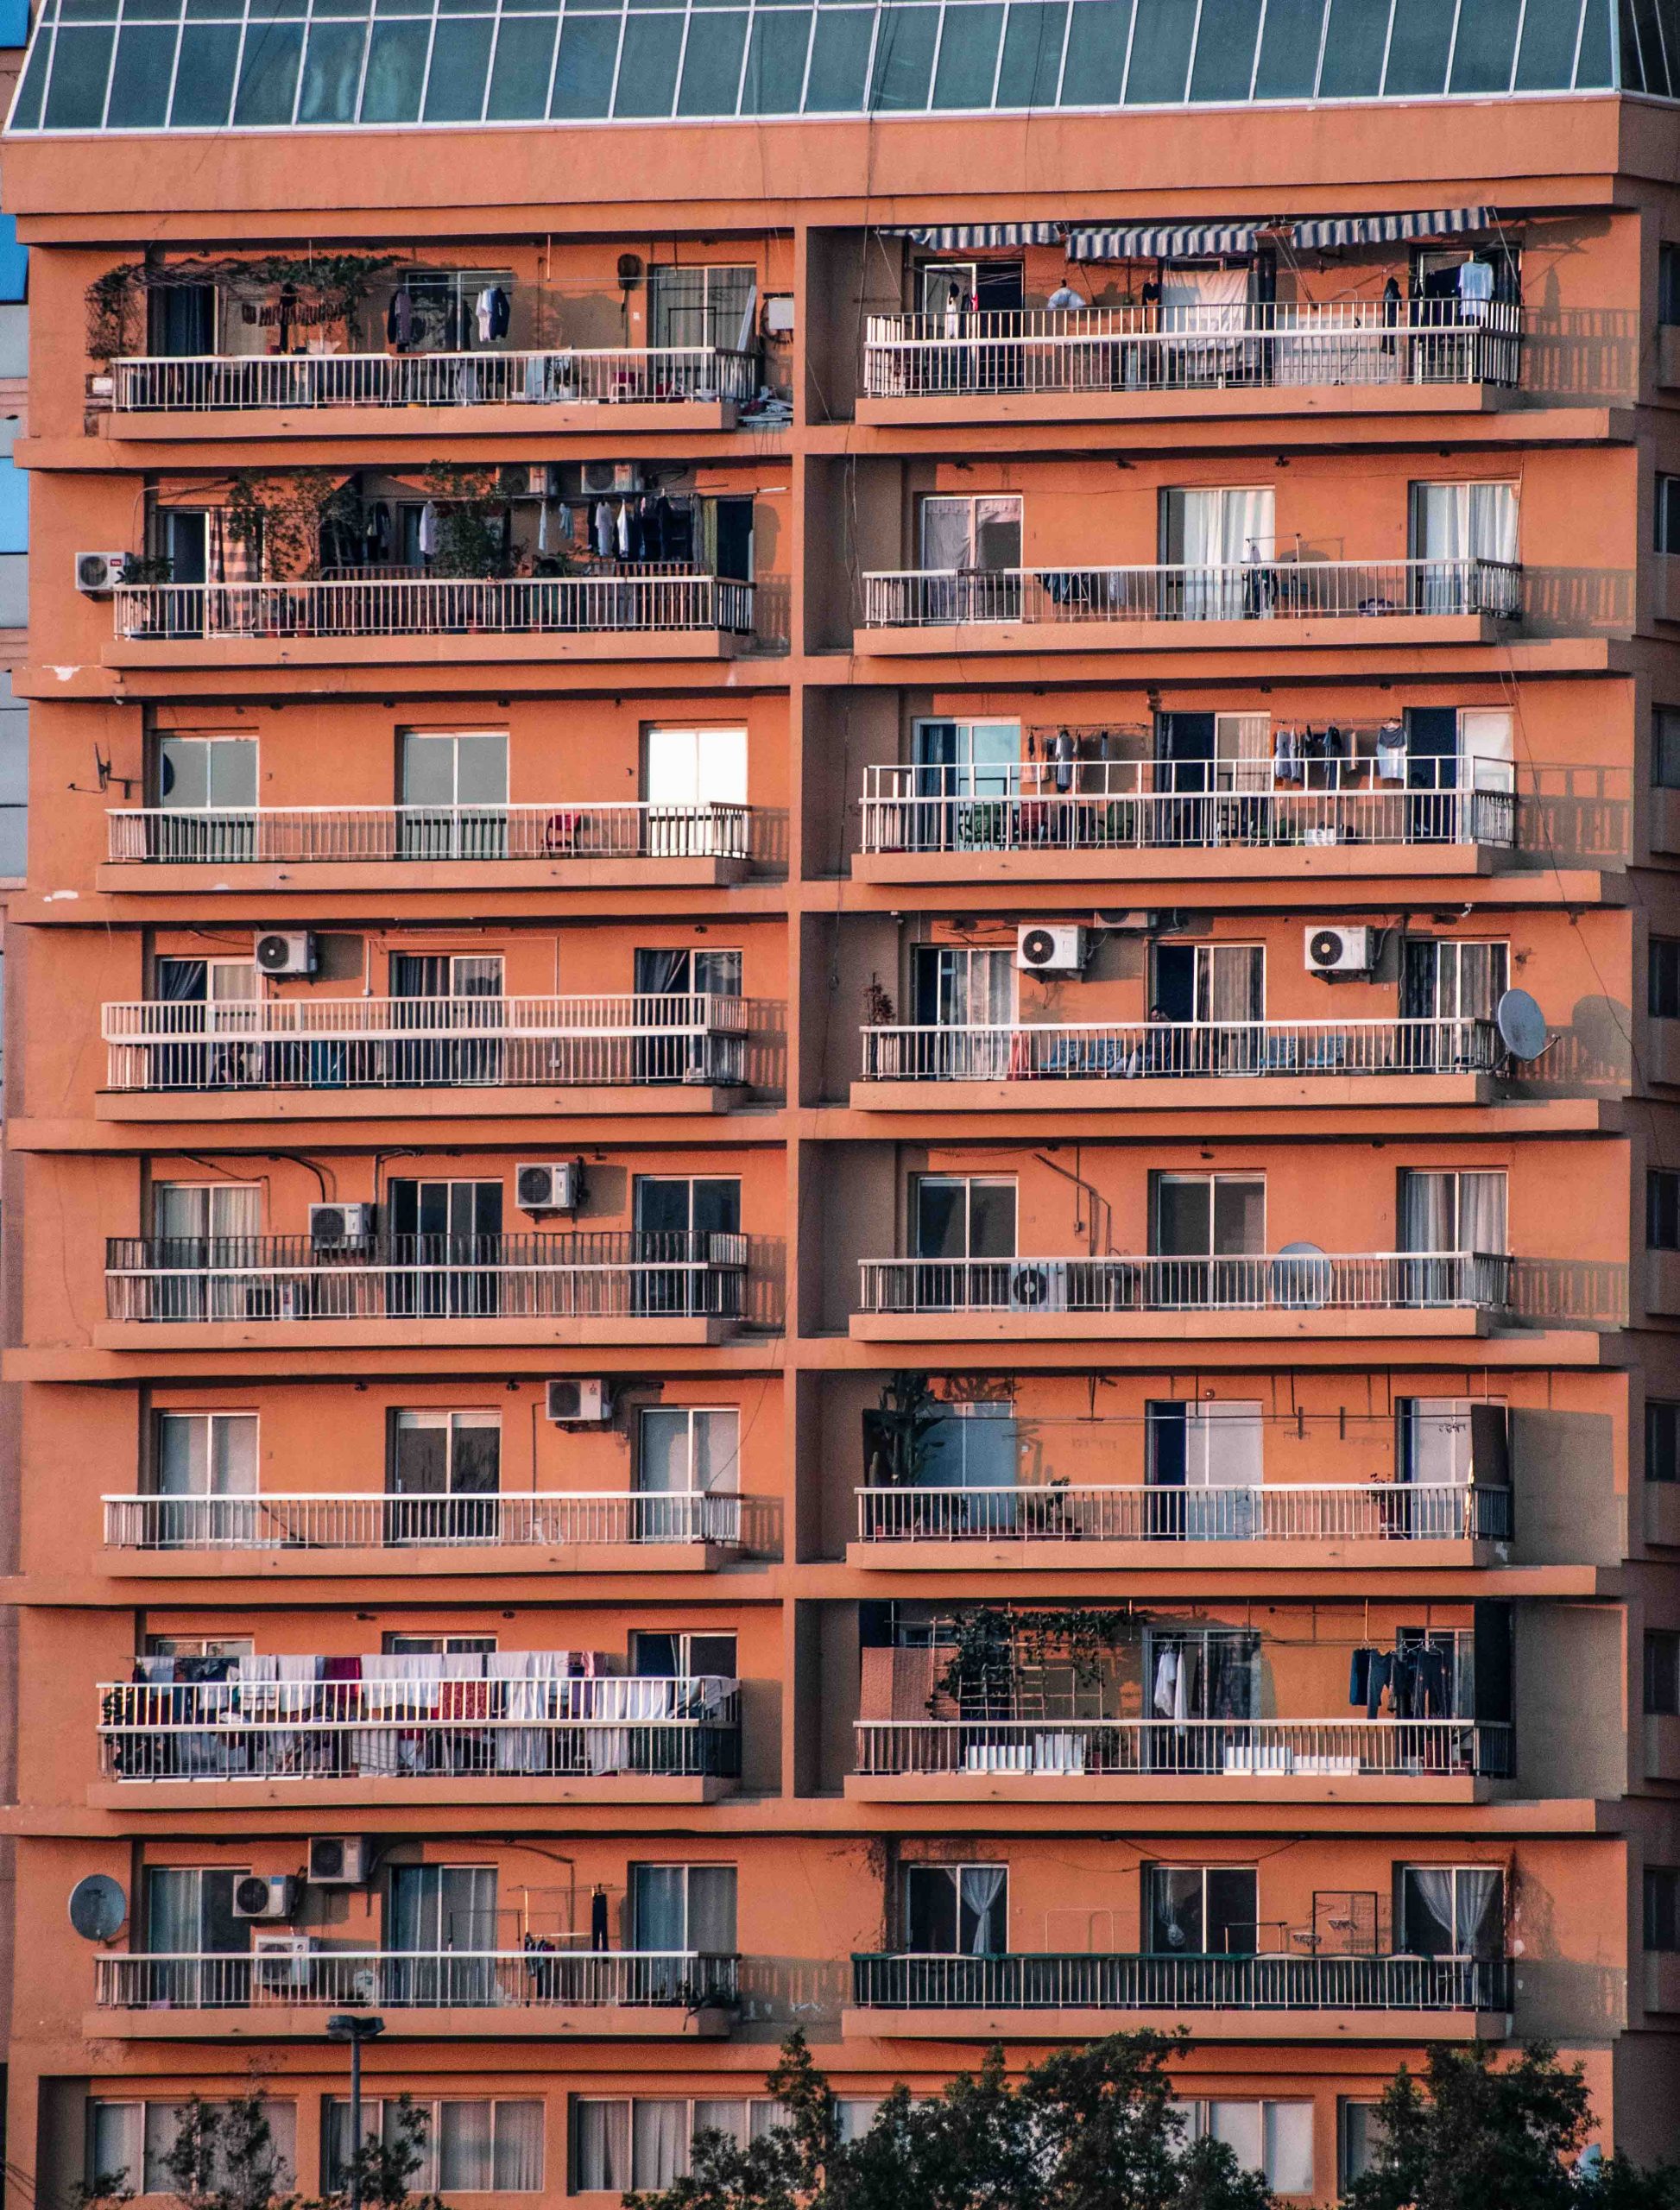 Balcones en un edificio de viviendas.